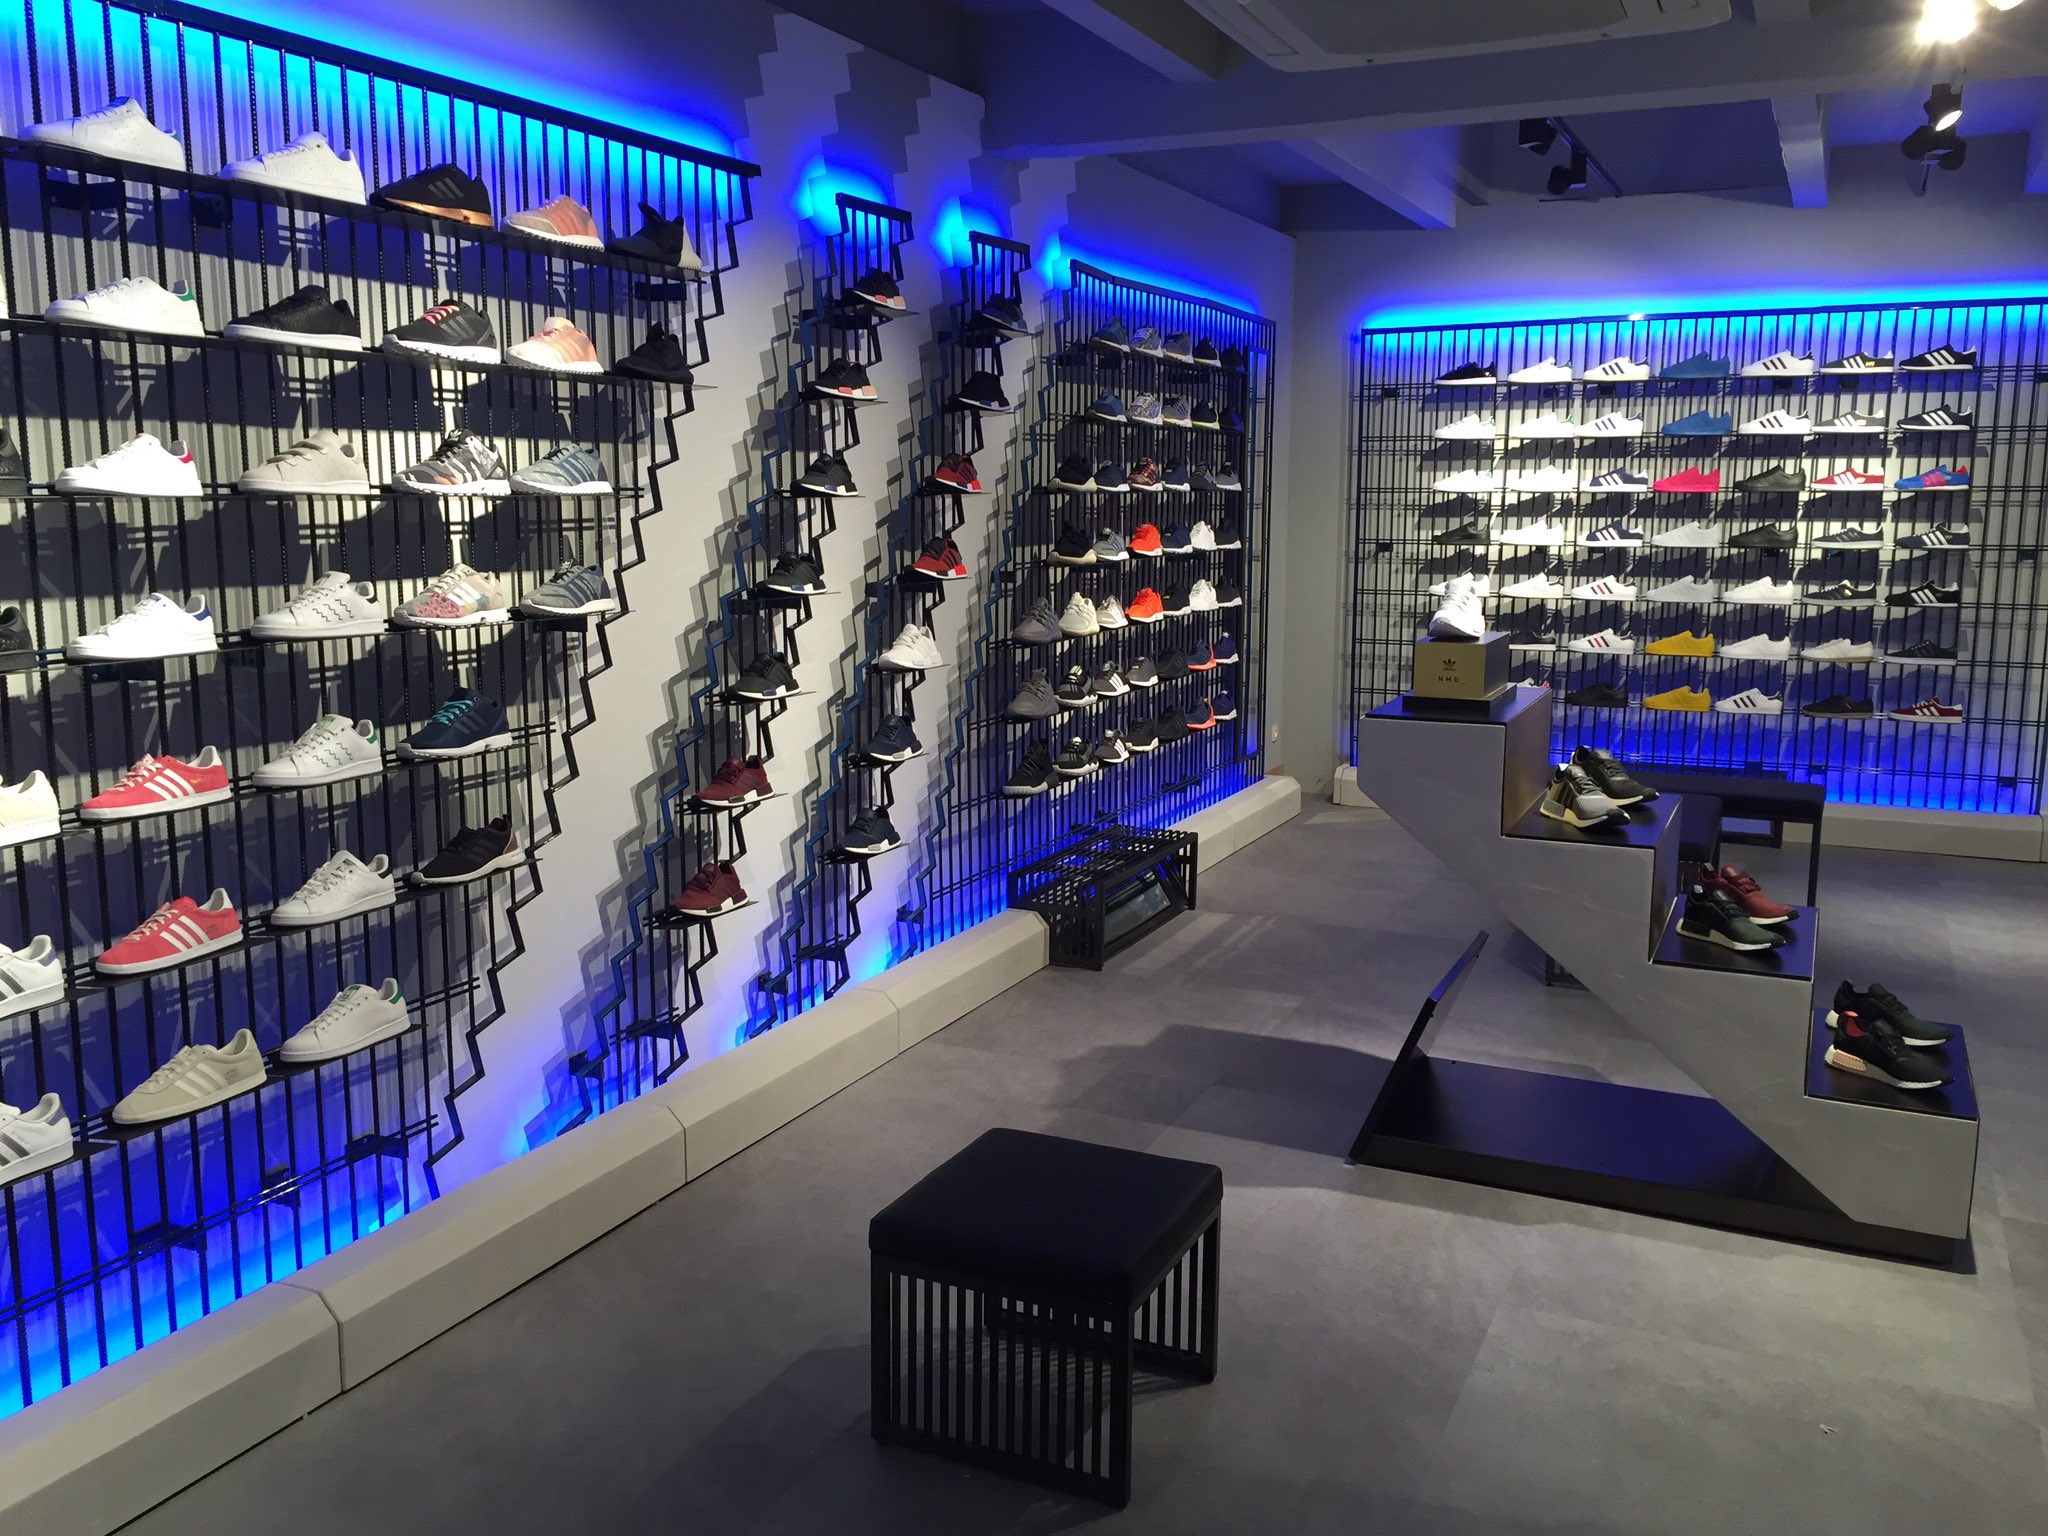 Brest on Twitter: "La boutique Adidas, 130 m2 de streetwear via @ouestfrance https://t.co/tzyr5yvt4C https://t.co/0l0swyijDS" Twitter